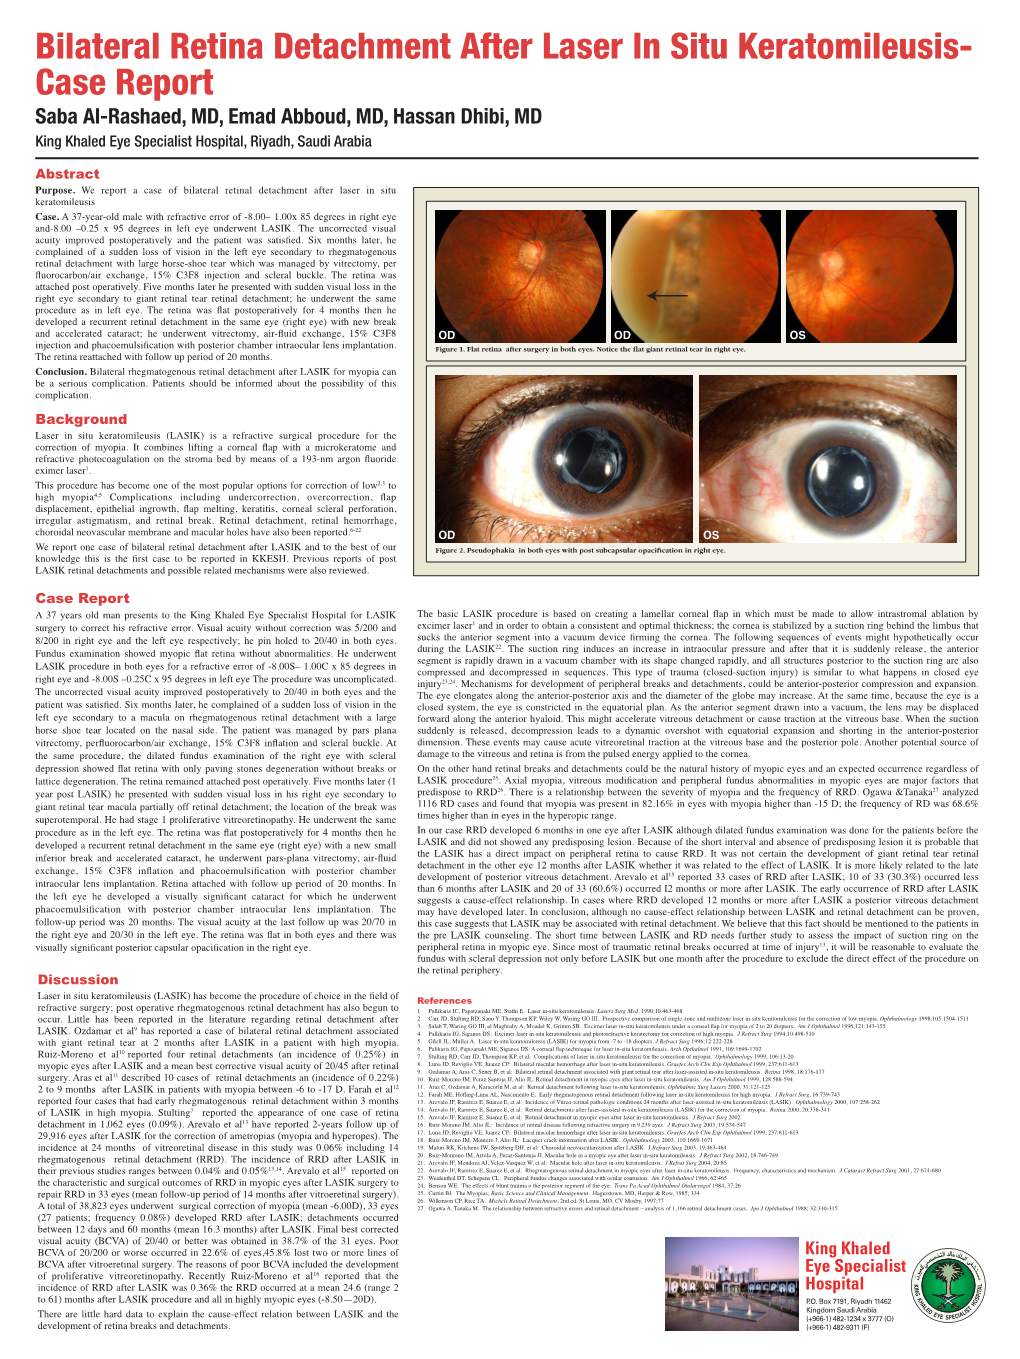 Bilateral Retina Detachment After Laser in Situ